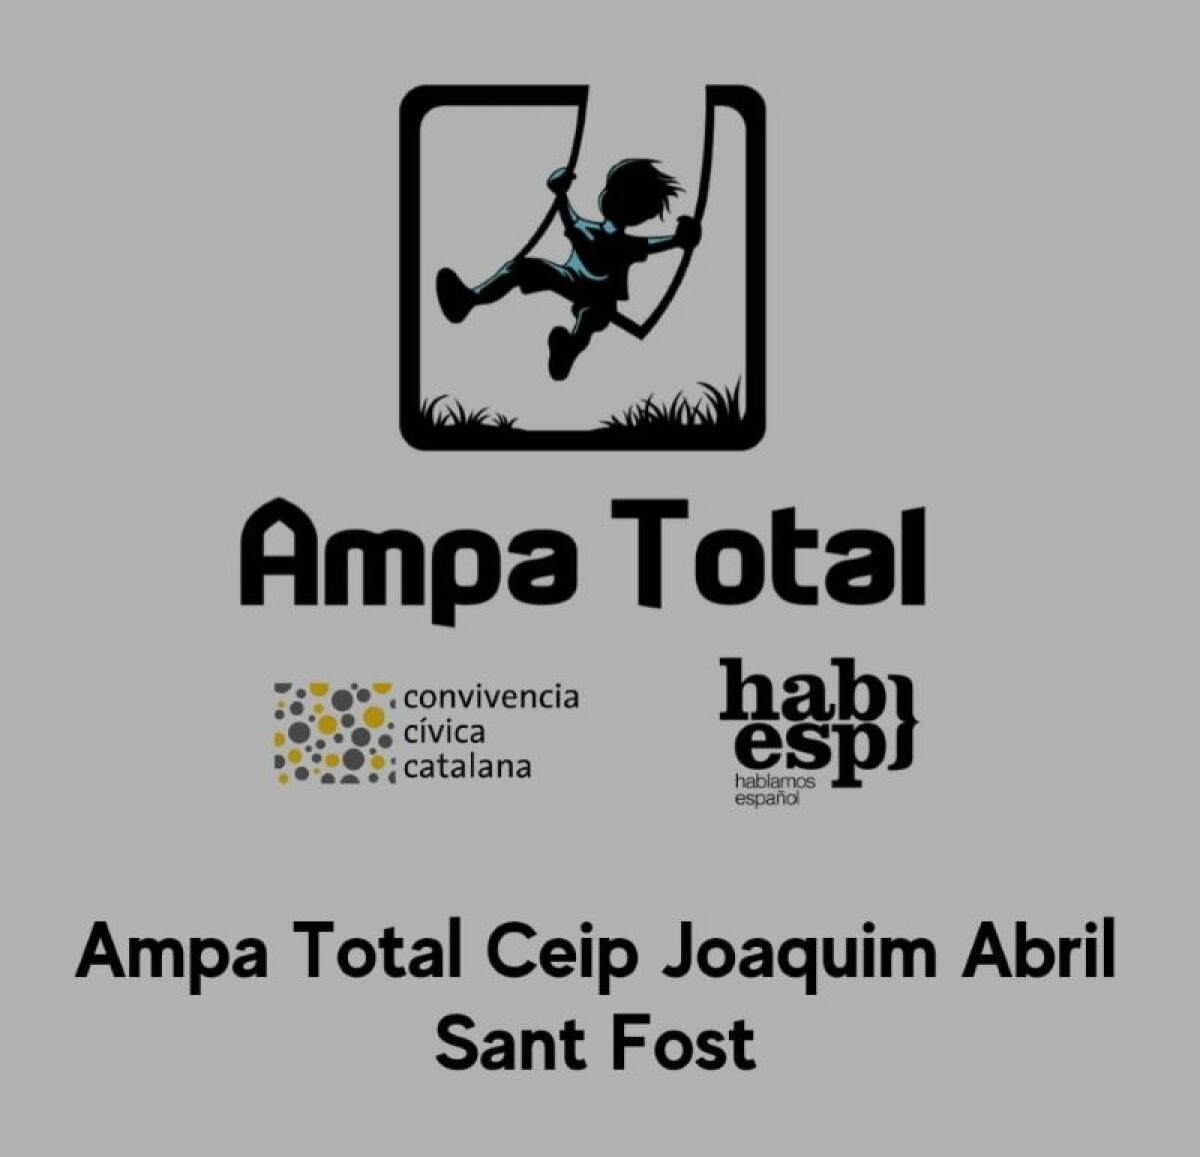 El TSJC ha legitimado, por fin, la Federación de AMPAS auspiciada por Convivencia Cívica y Hablamos Español.